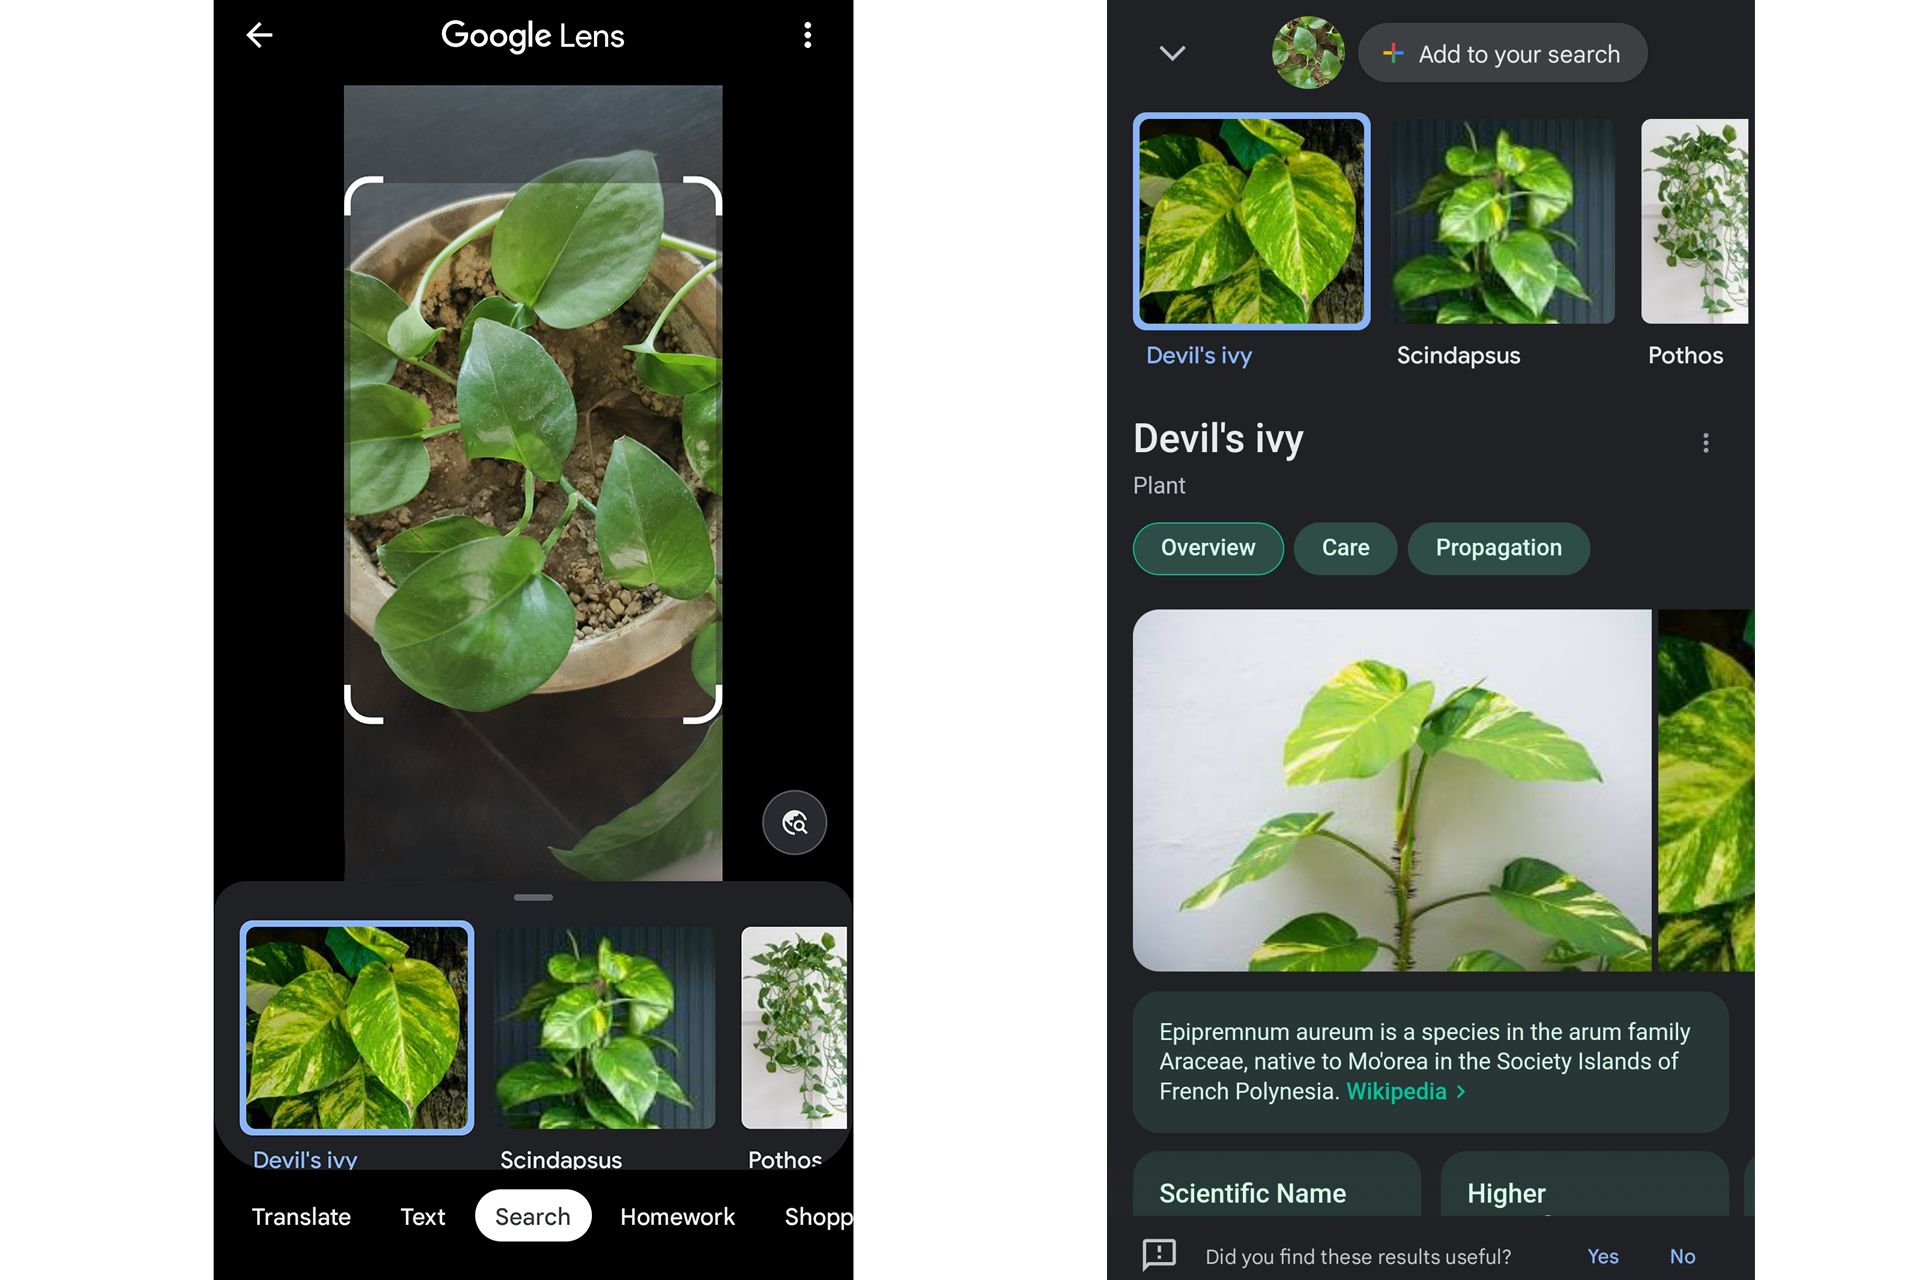 گوگل لنز در حال اسکن گیاهان و نمایش نتیجه